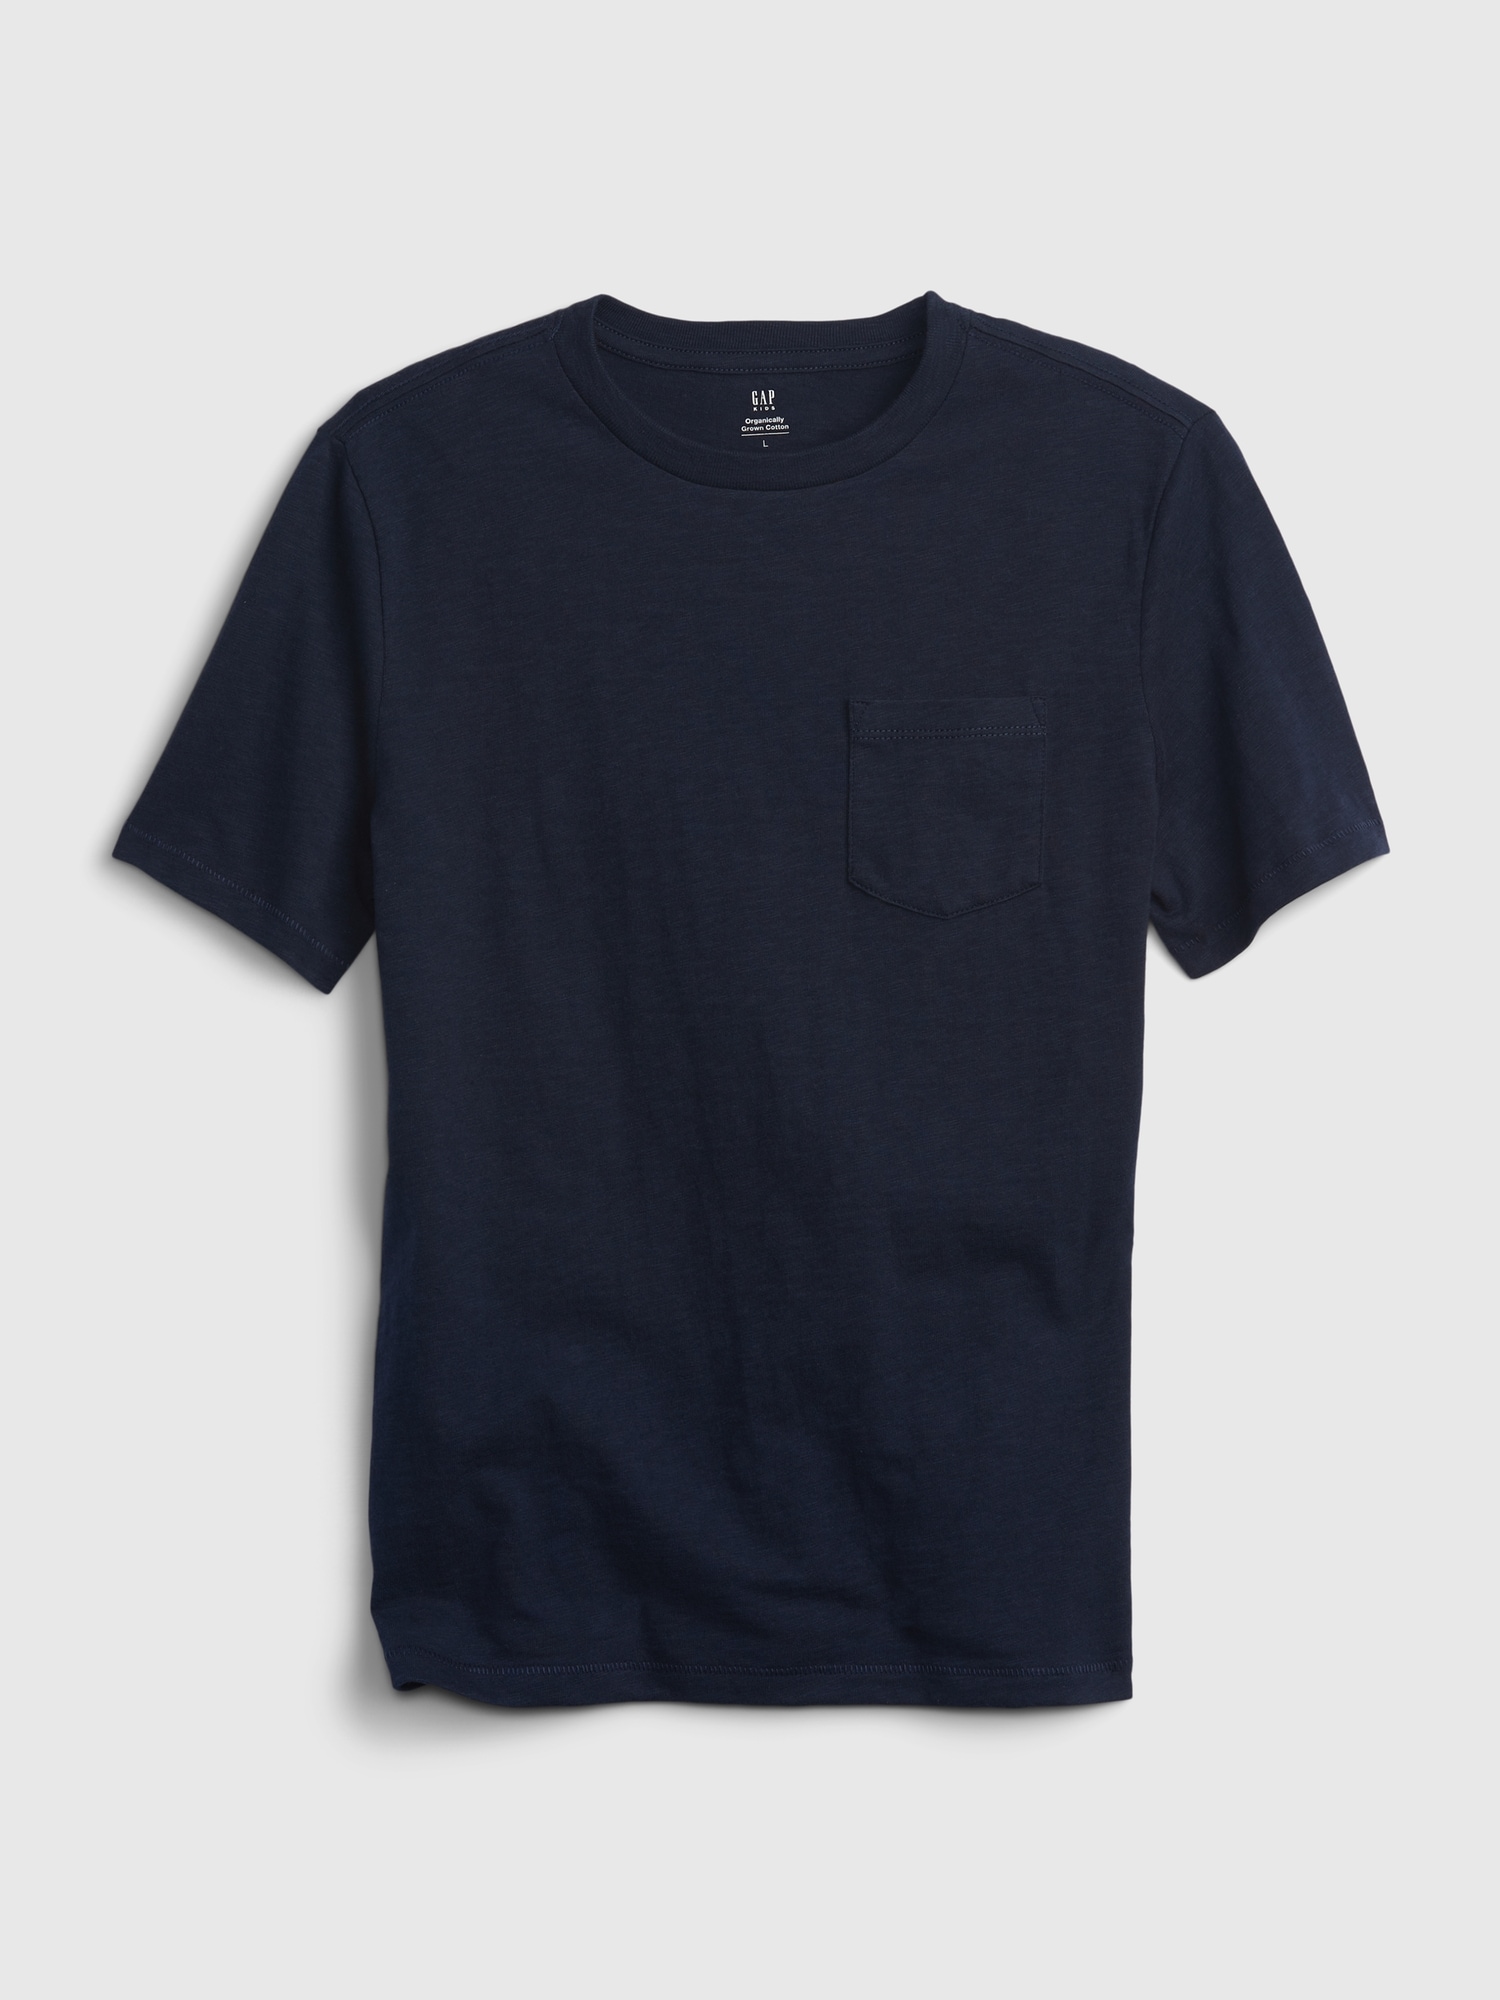 Tシャツ・トップス (ボーイズ 110-160cm) | Gap公式オンラインストア